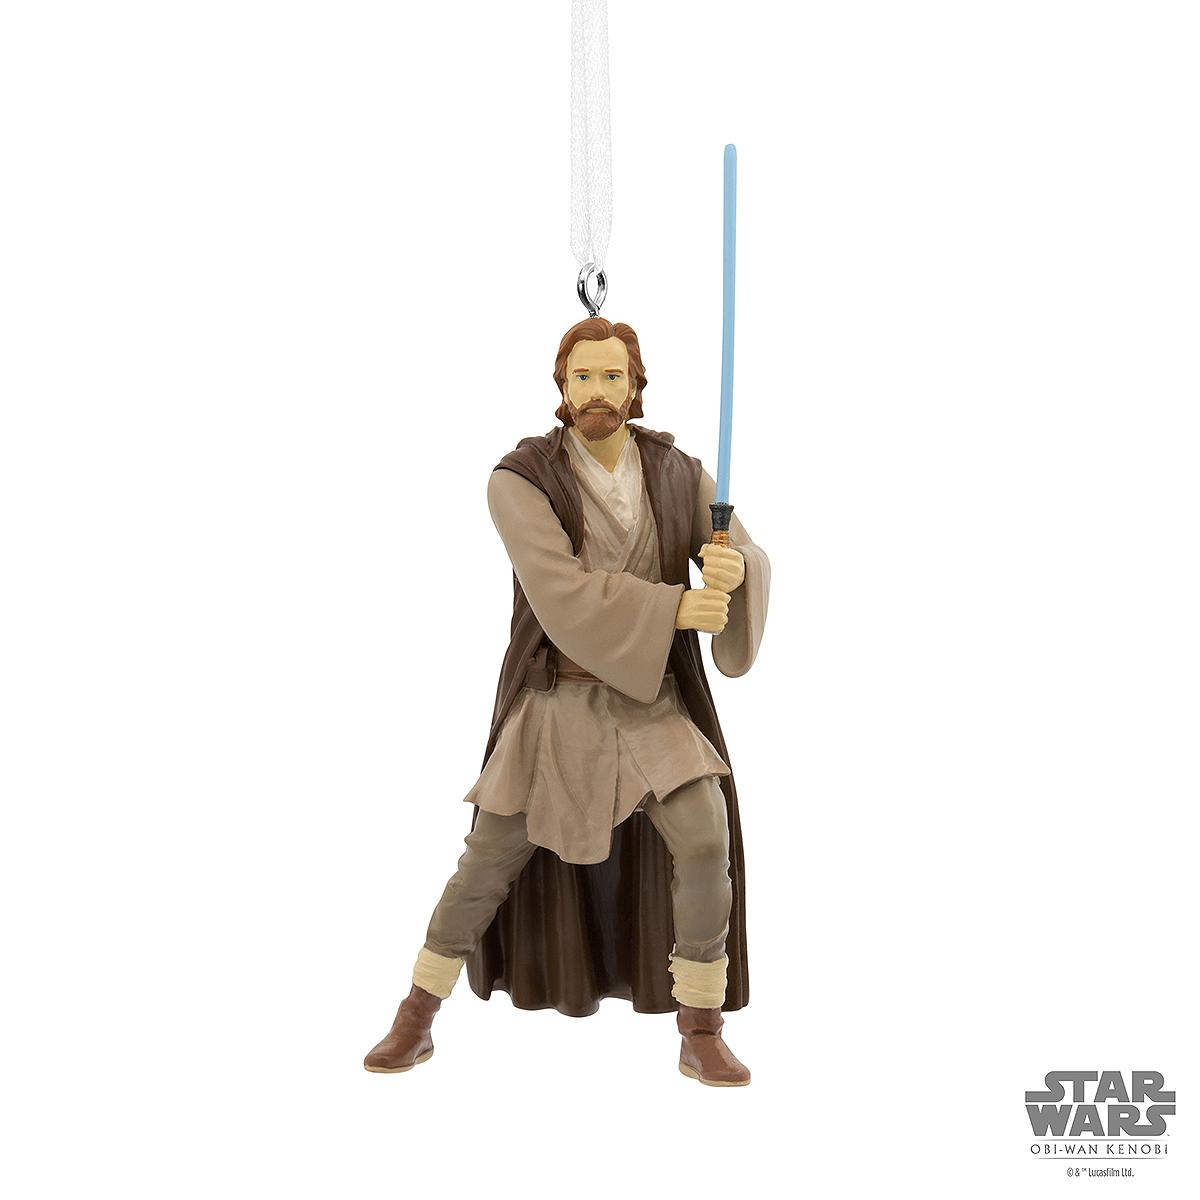 Obi Wan Kenobi Star Wars Hallmark